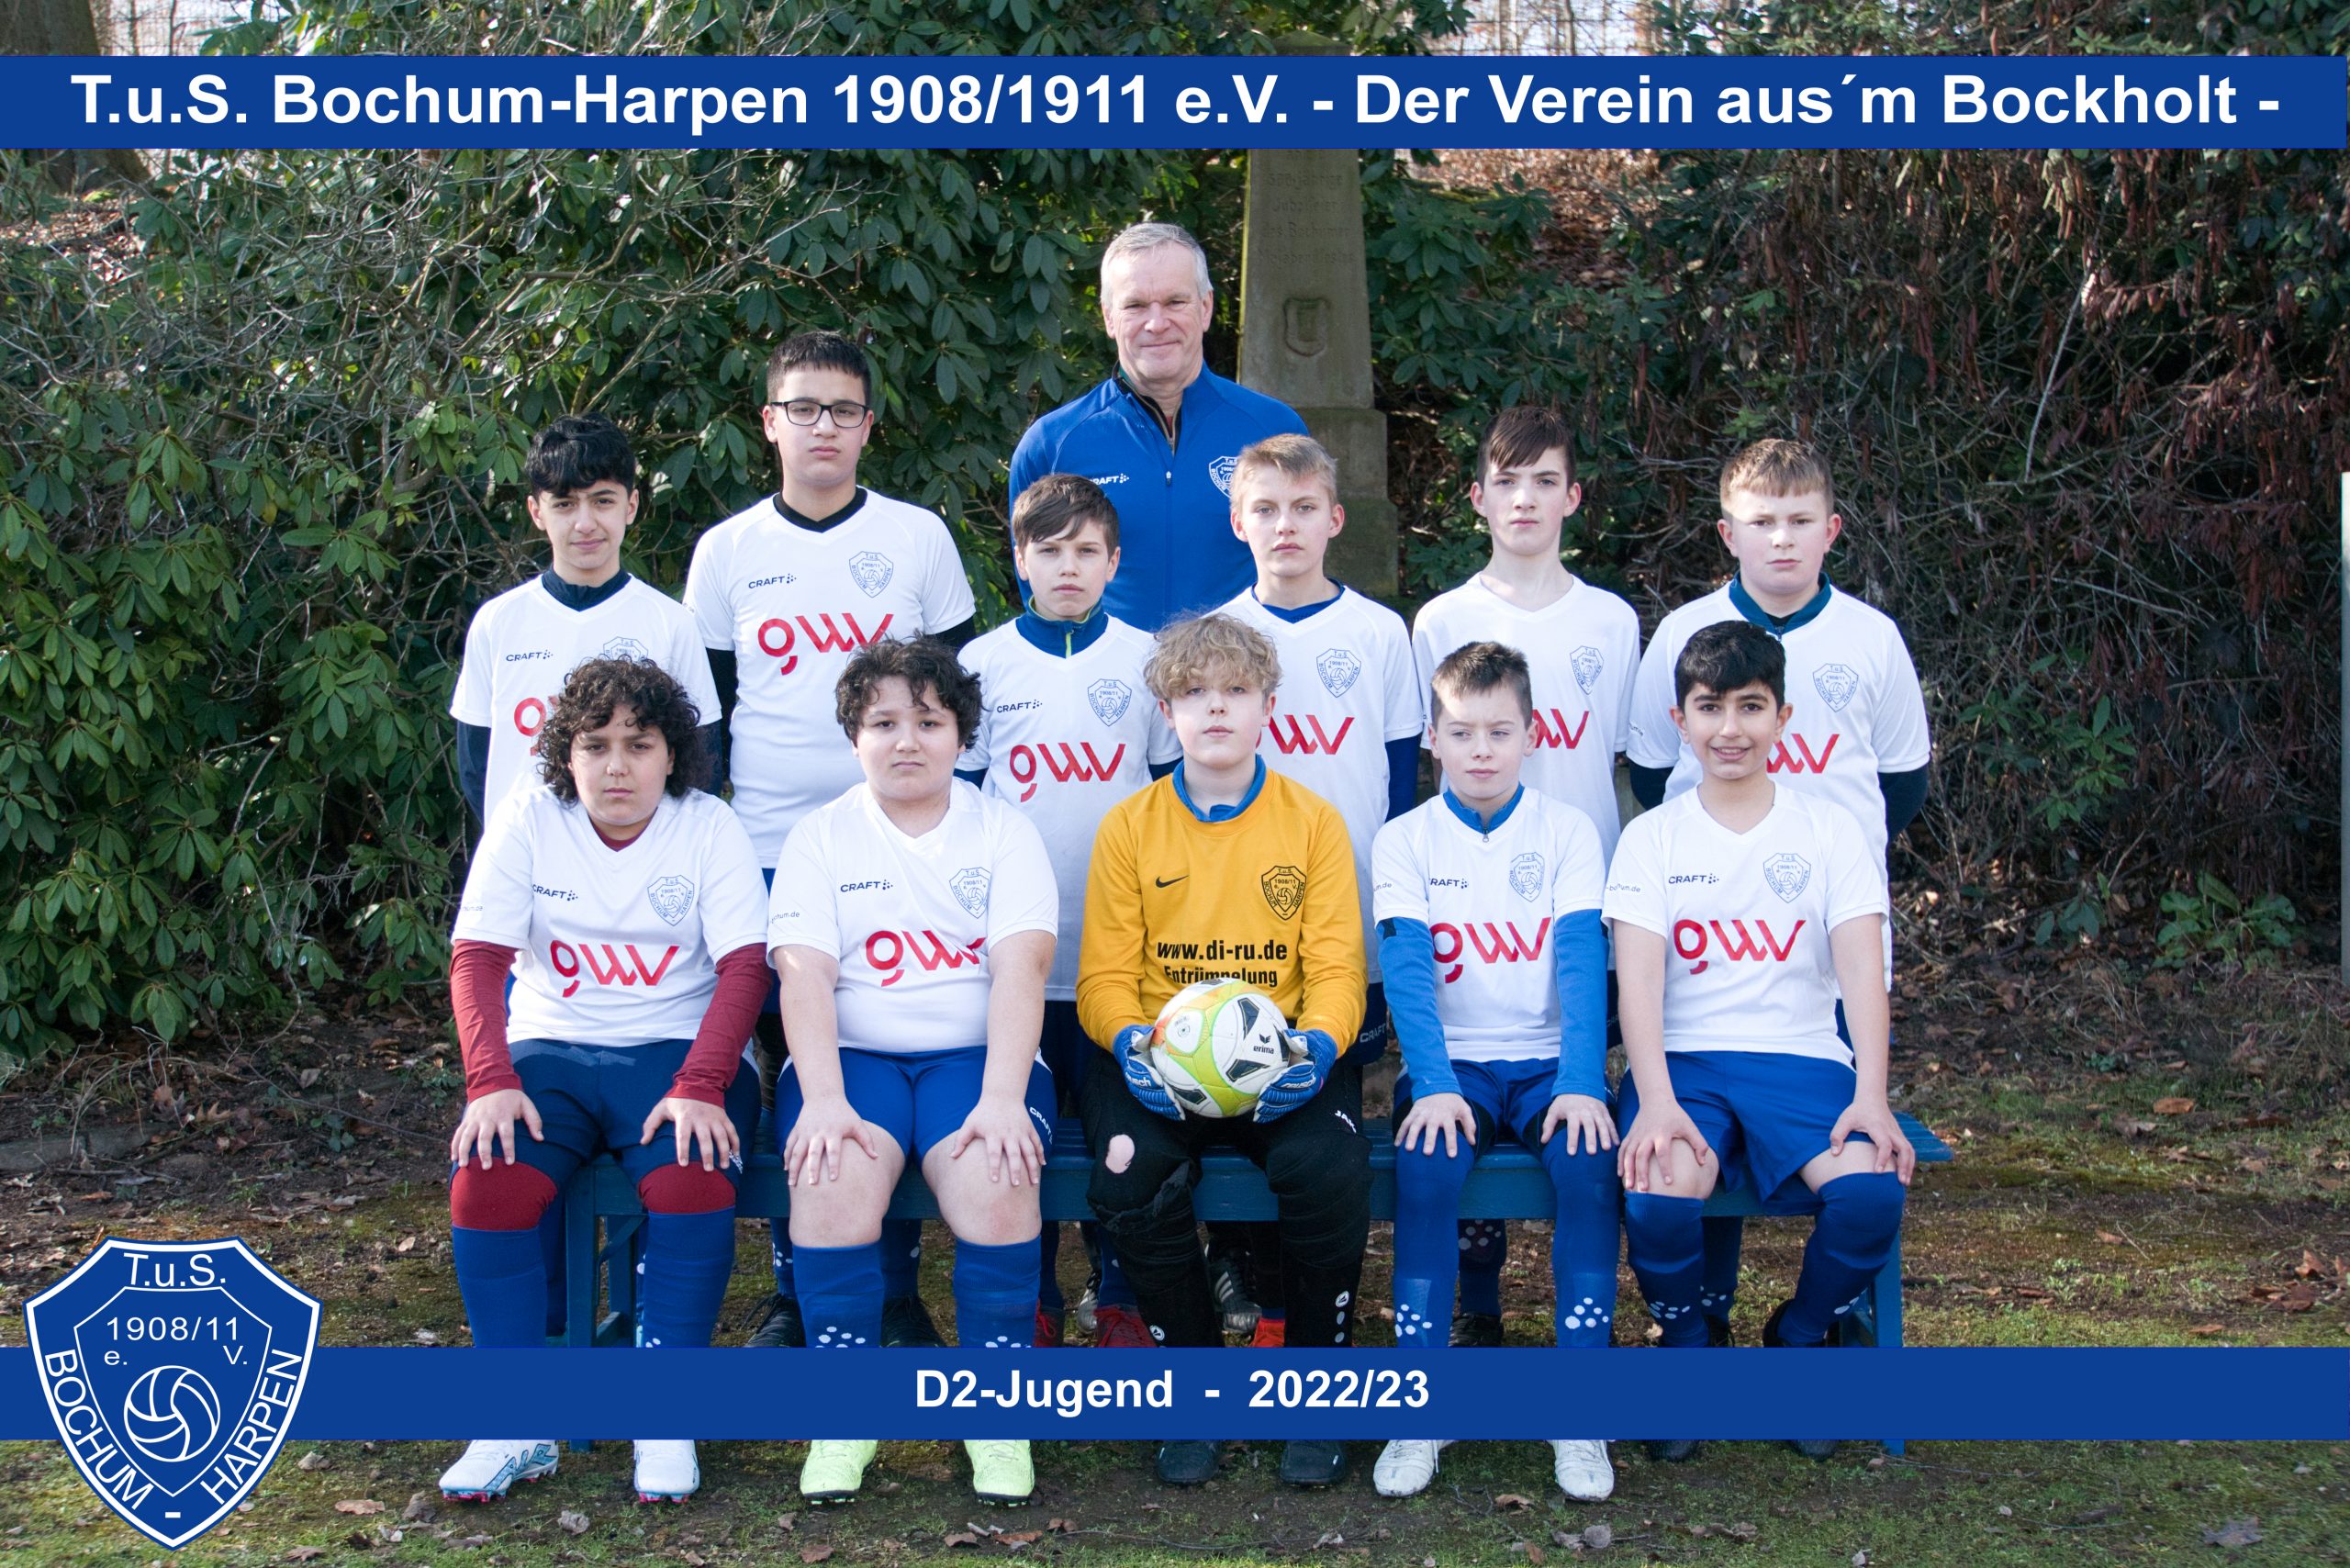 D2-Jugend 2022/23